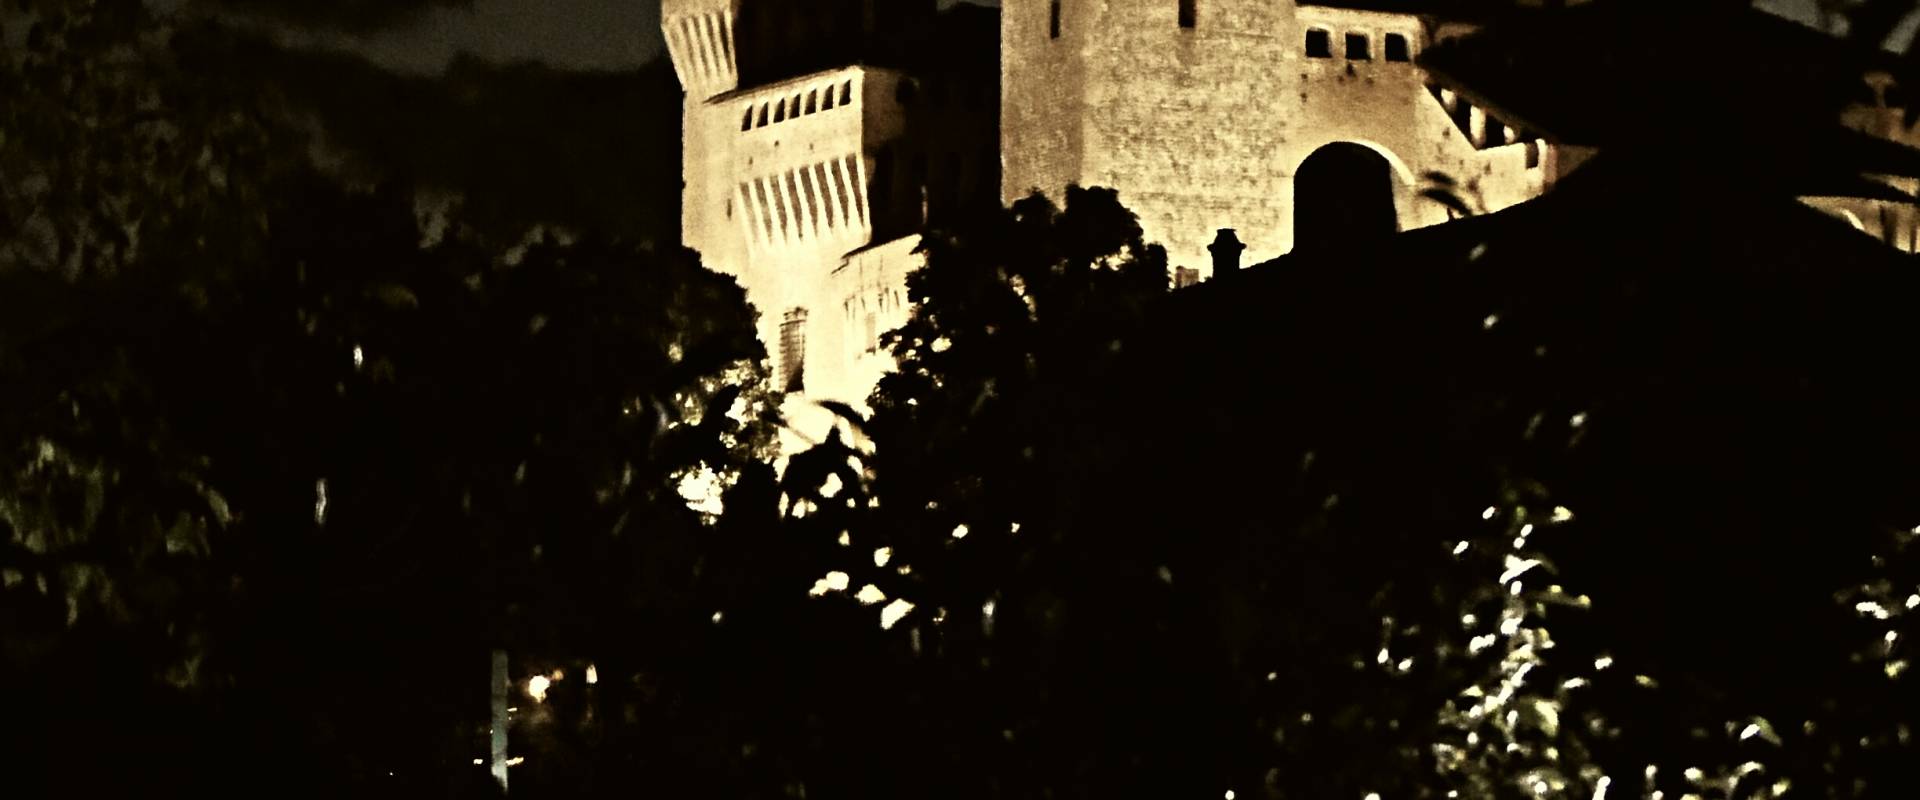 20170914225809-01 veduta notturna della Rocca tra due piccole palme foto di Massimo F. Dondi